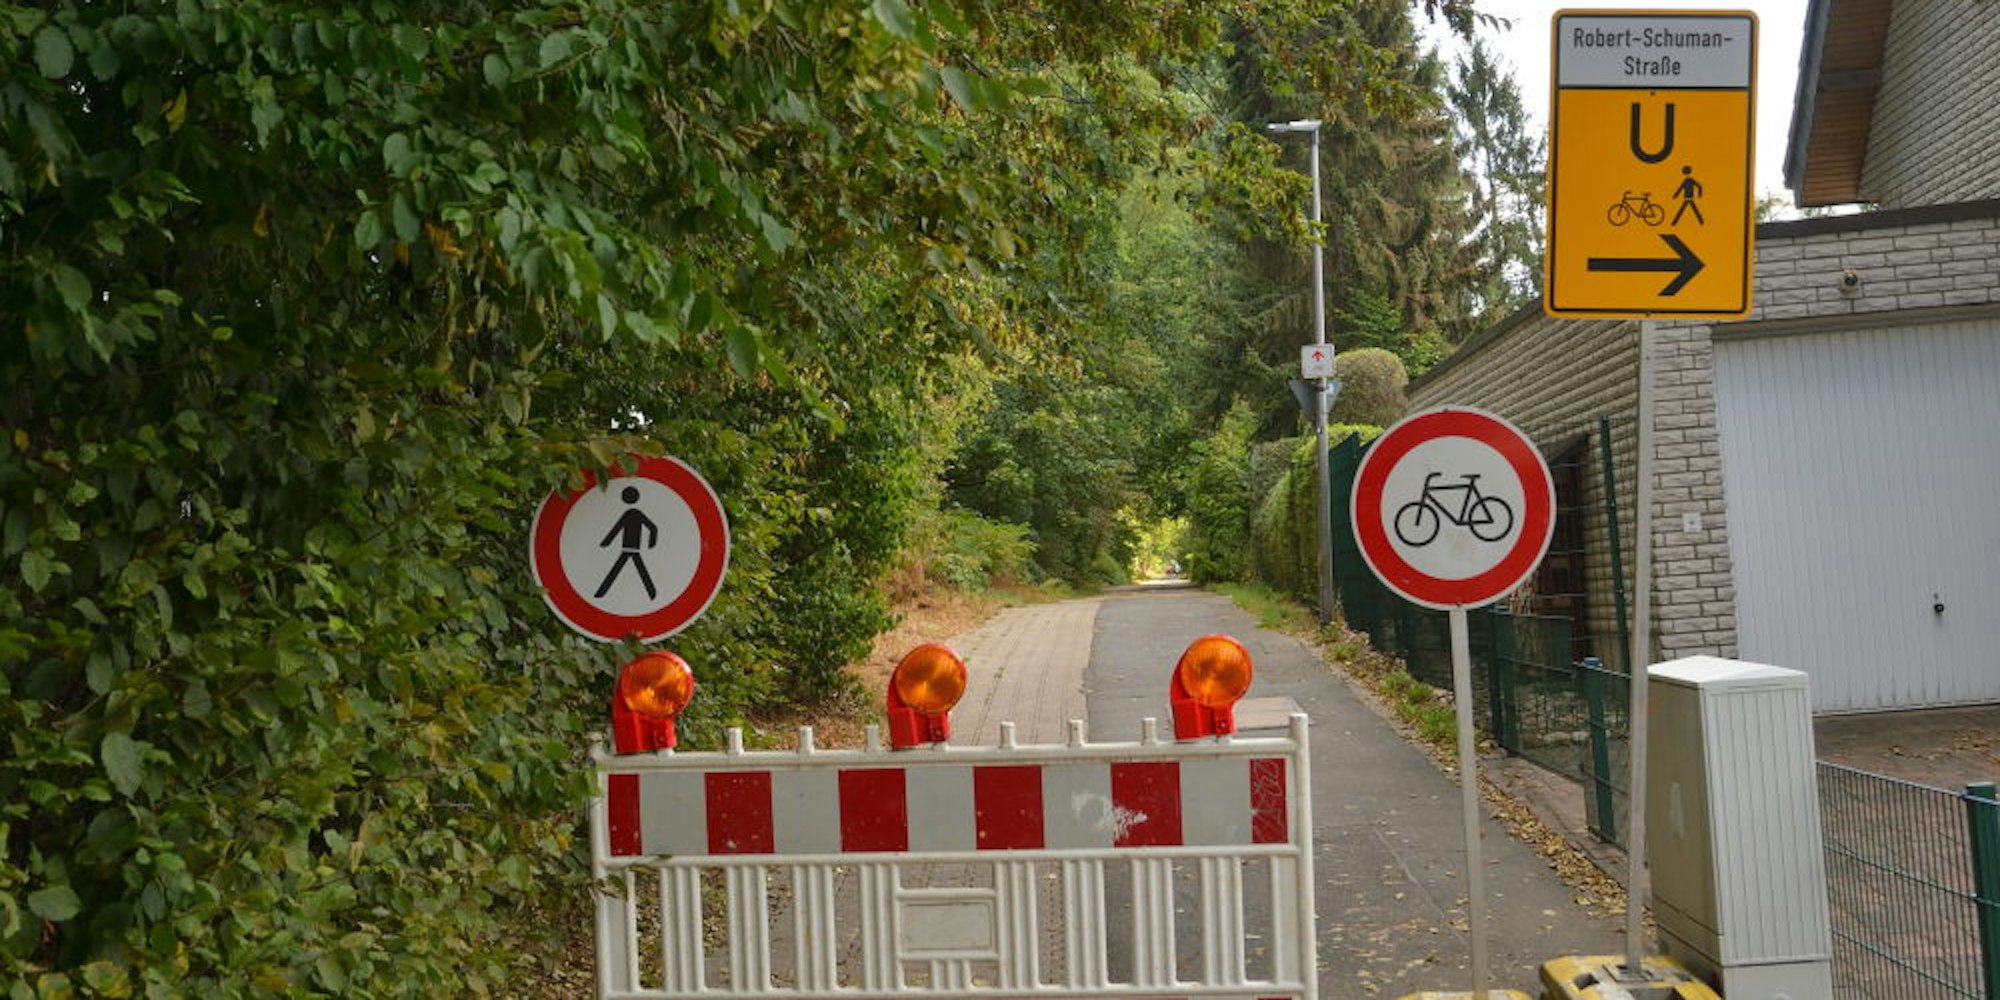 Kein Durchkommen bis Ende Oktober zwischen Sieglindenweg und Robert-Schumann-Straße.